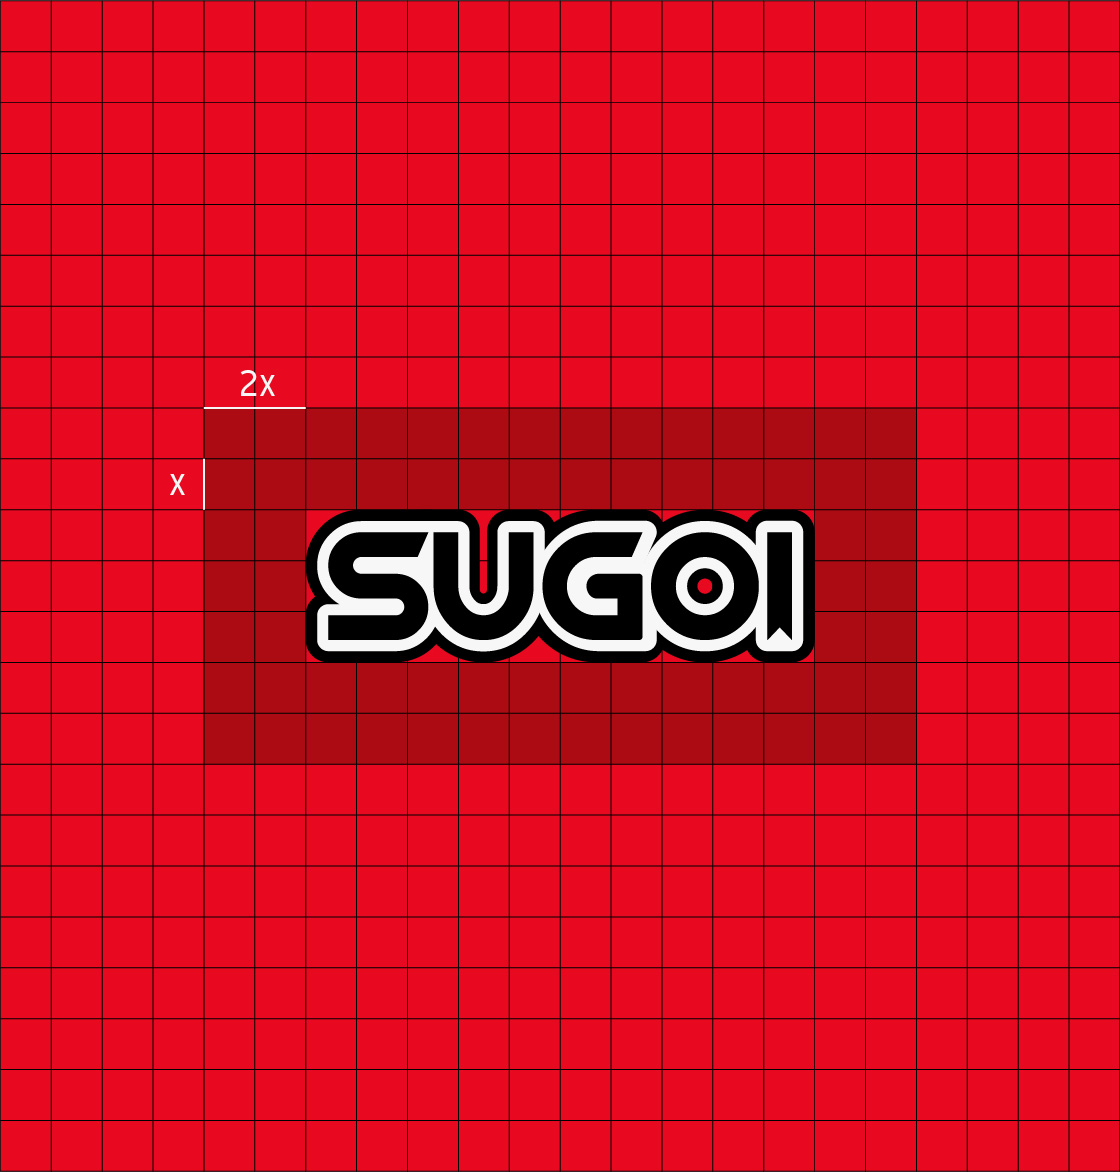 sugoi_app_logo_margin